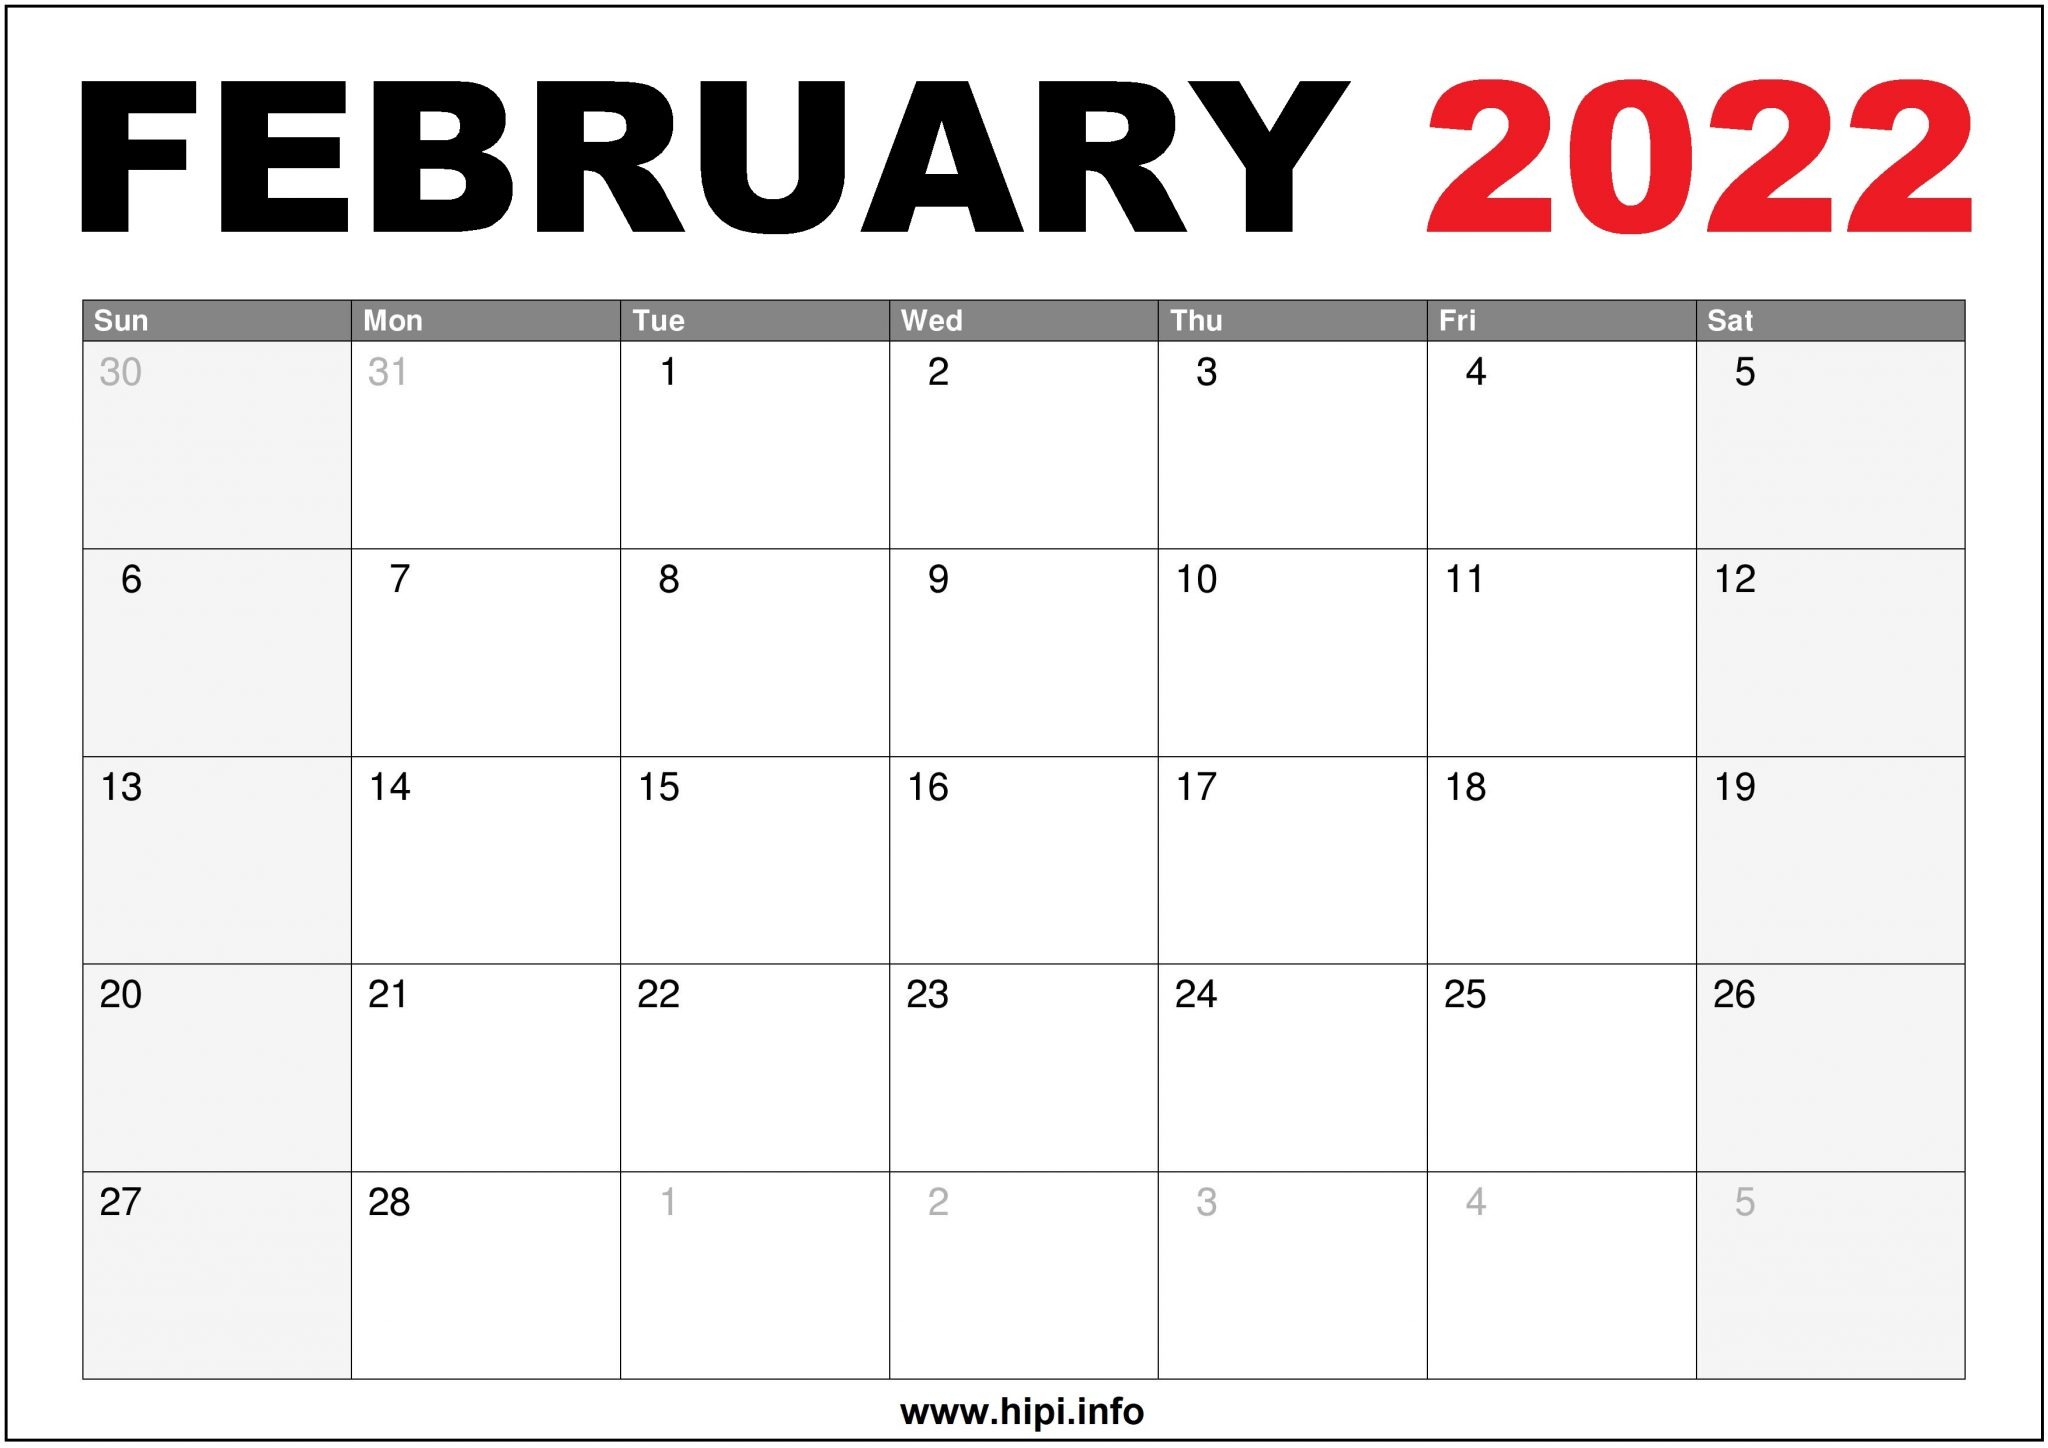 2022 February Calendar Us Printable - Hipi